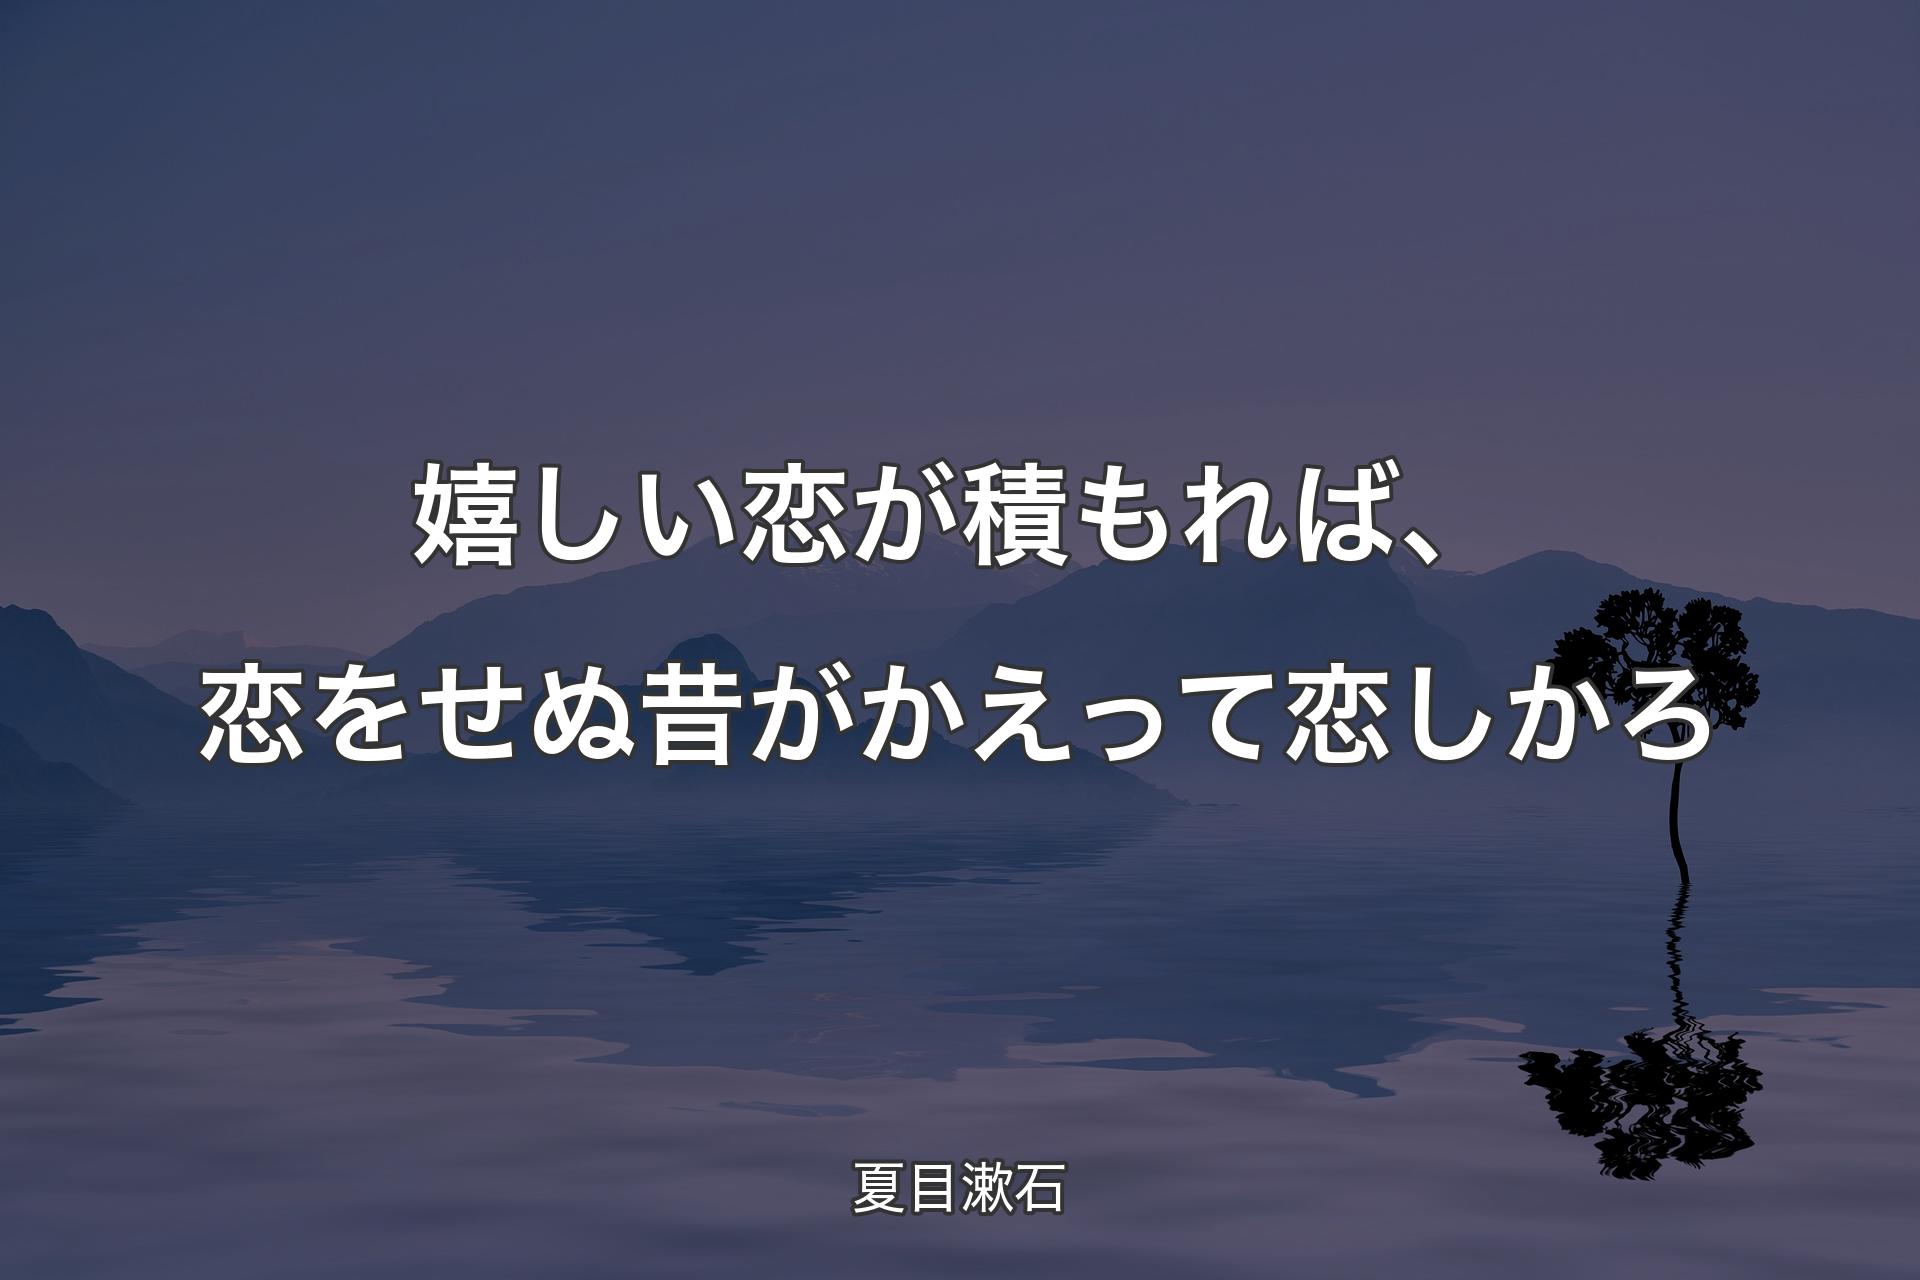 嬉しい恋が積もれば、恋をせぬ昔がかえって恋しかろ - 夏目漱石